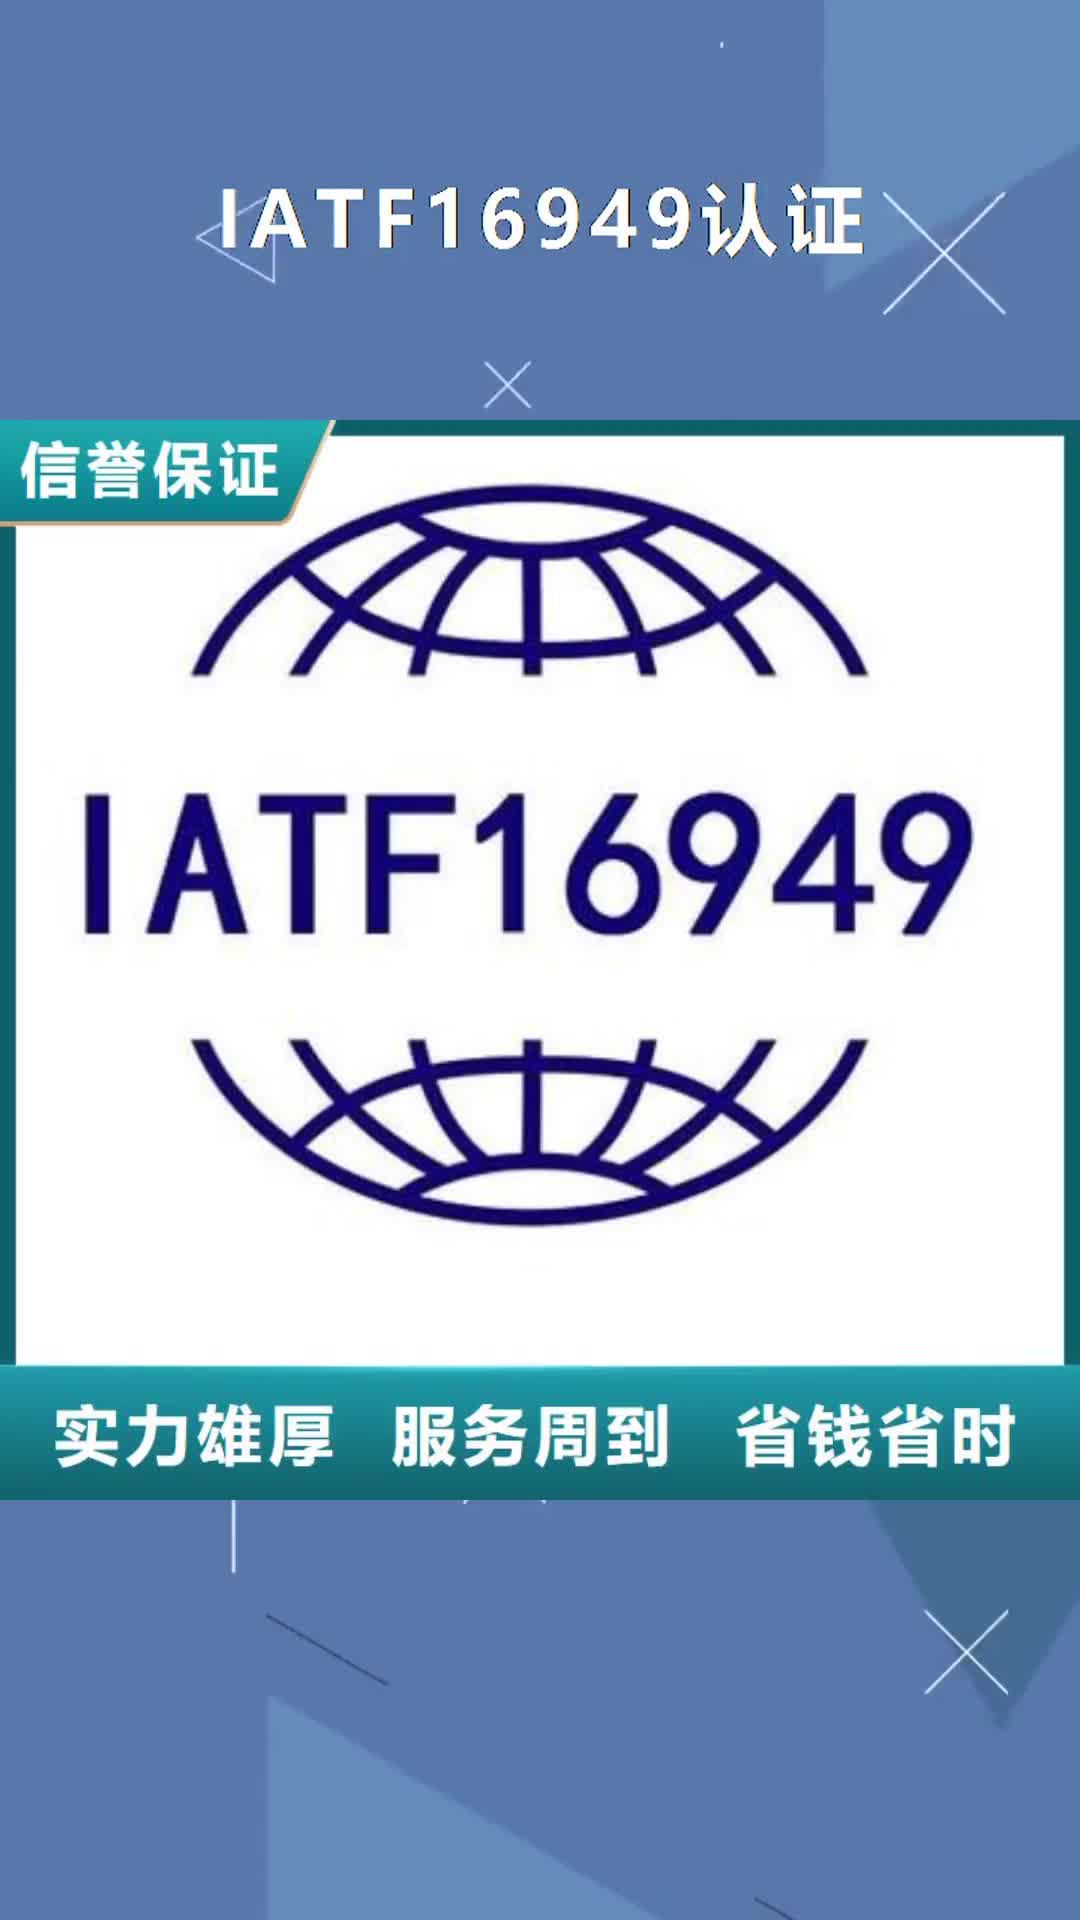 锦州【IATF16949认证】,知识产权认证/GB29490方便快捷